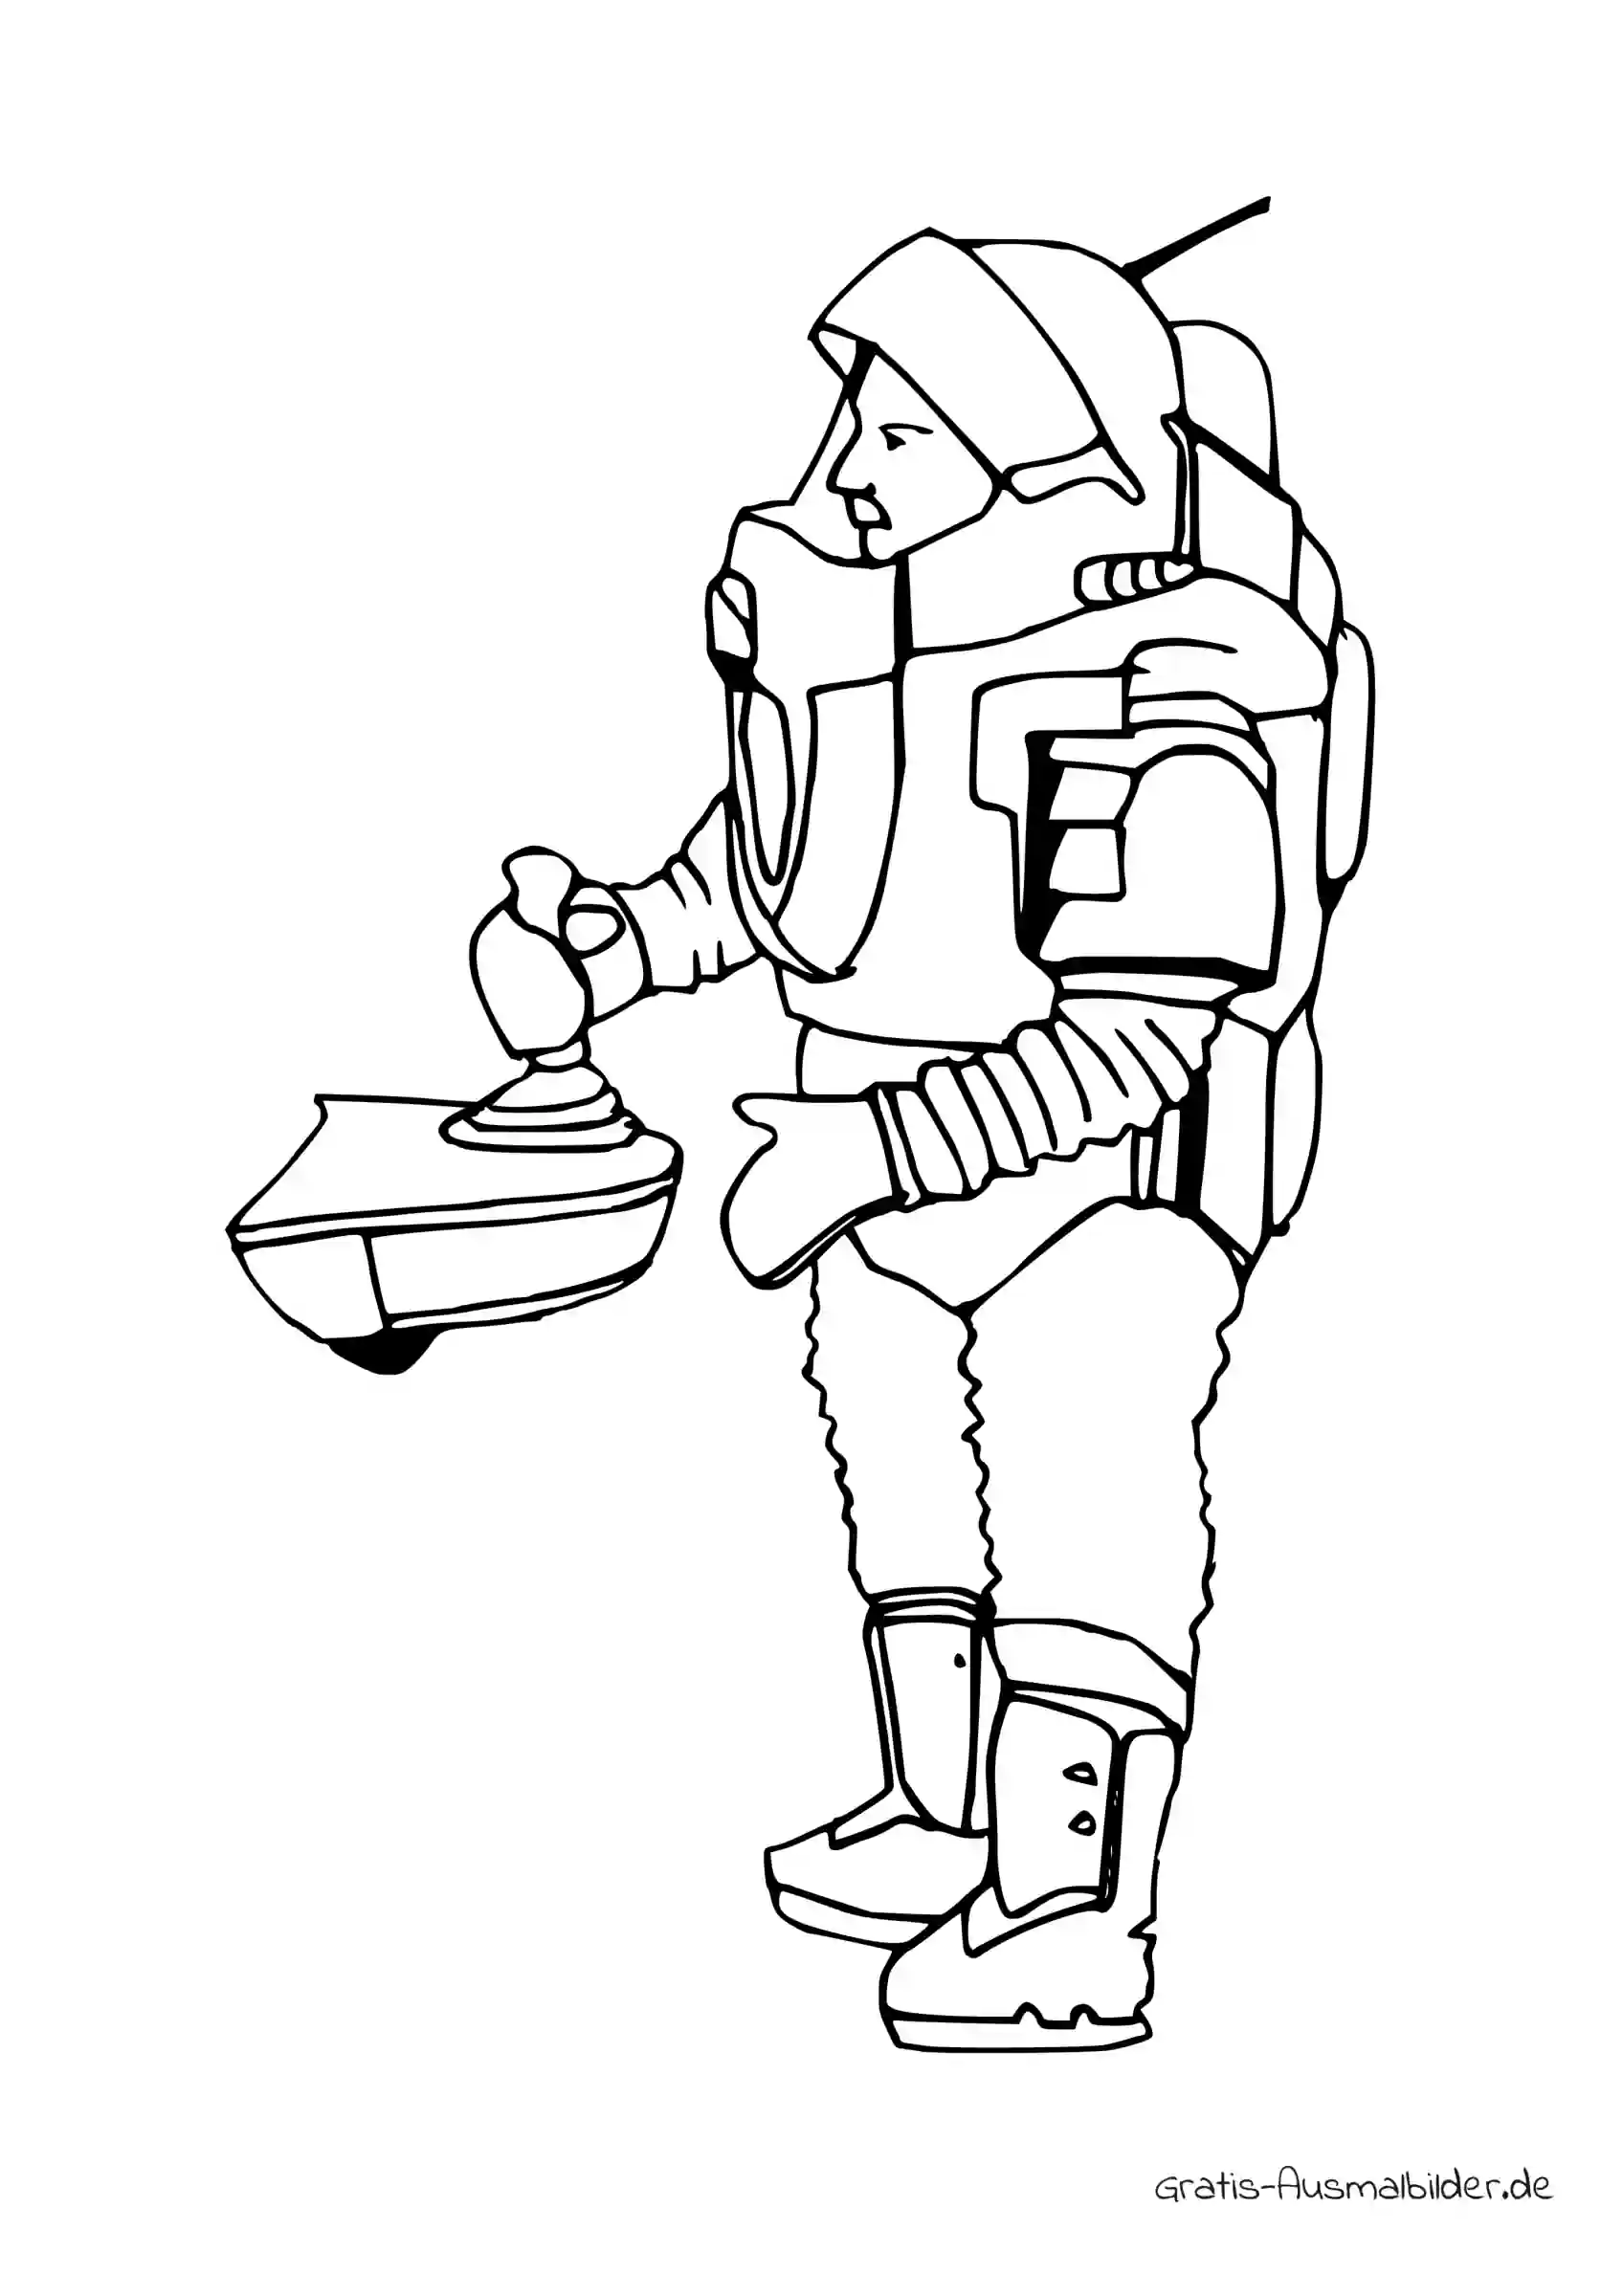 Ausmalbild Astronaut mit Steuerknüppel